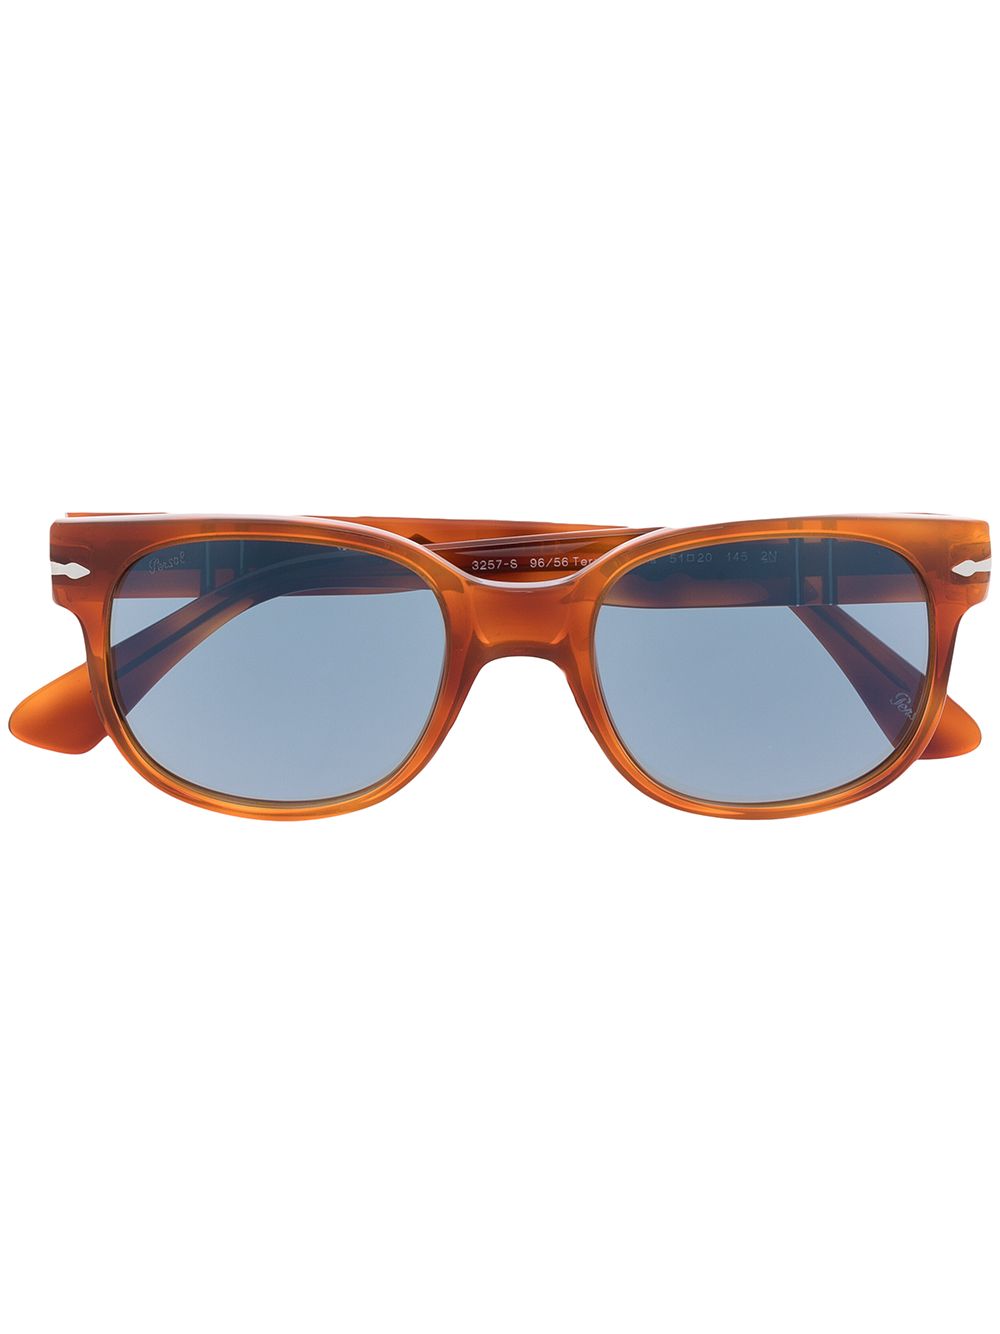 Persol Sonnenbrille mit breitem Gestell - Orange von Persol